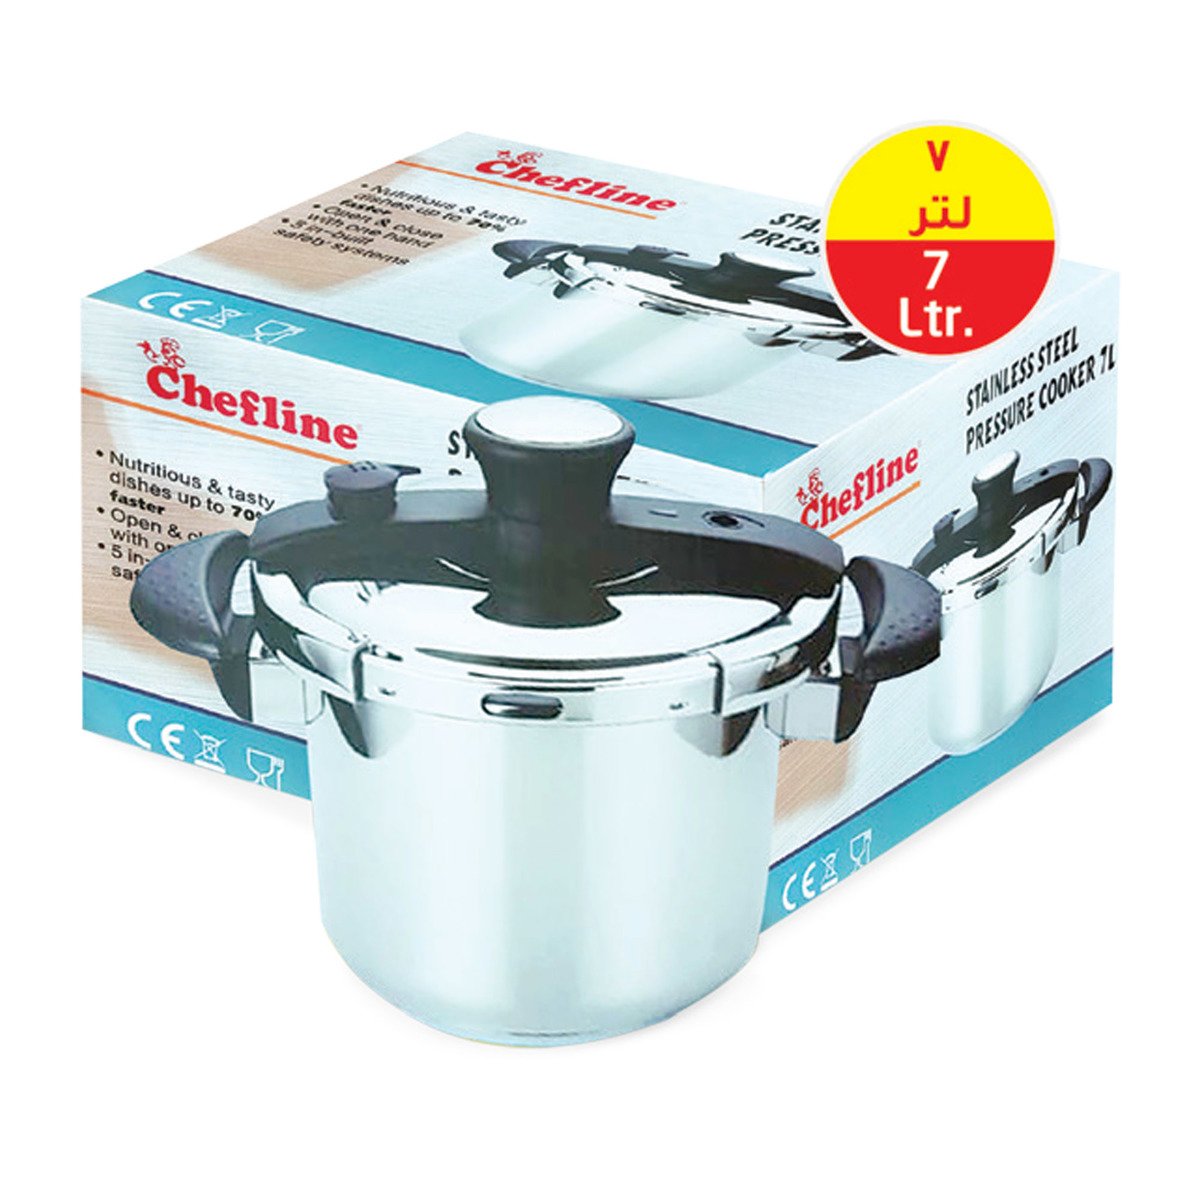 Chefline Stainless Steel Pressure Cooker 7Ltr DSM22Prm